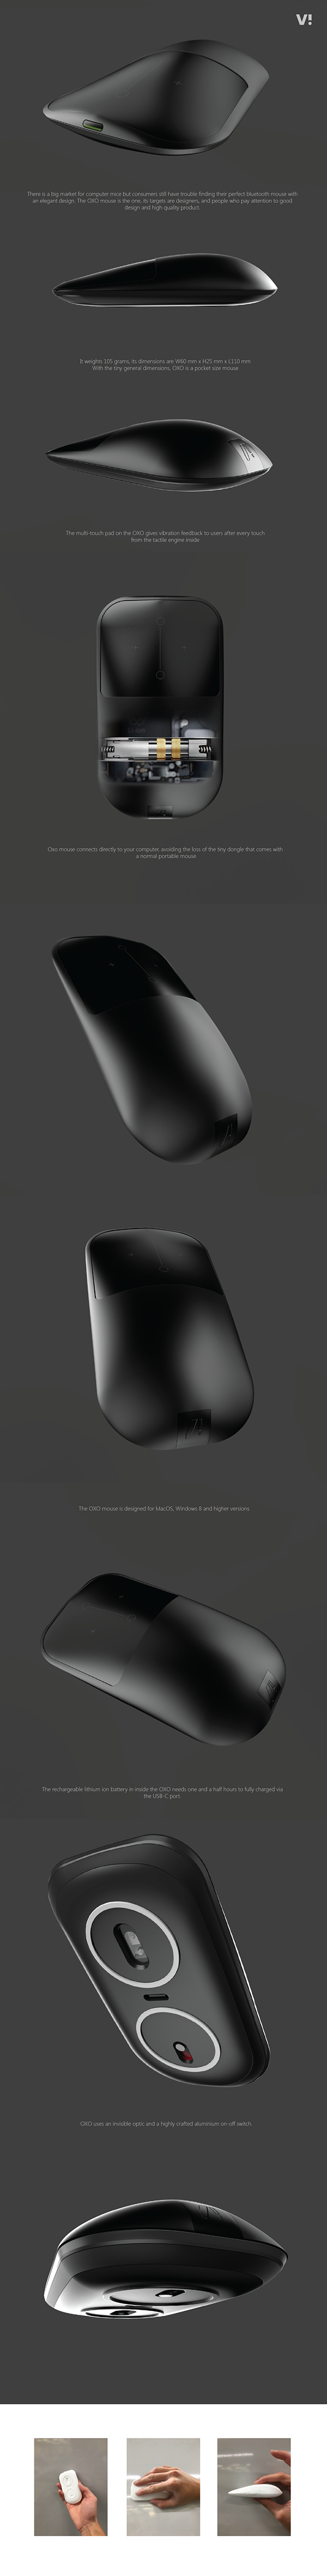 OXO Mouse Concept